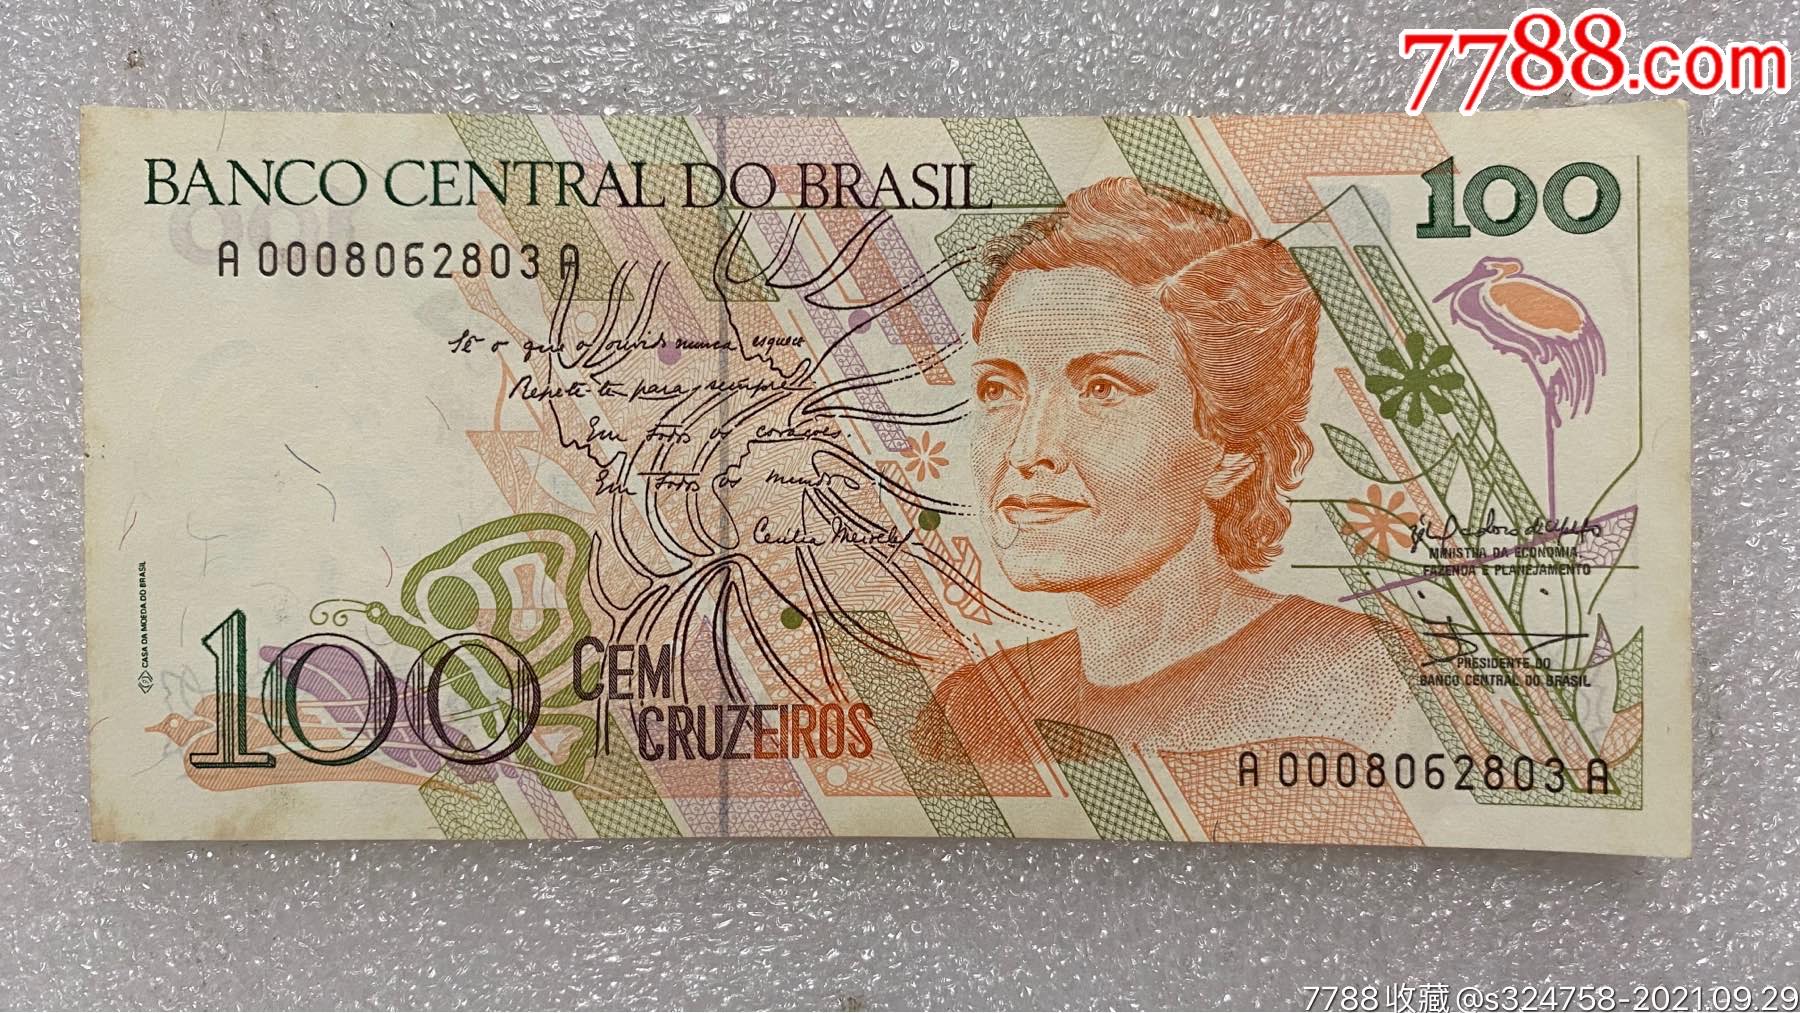 巴西1990年100克鲁塞罗纸币